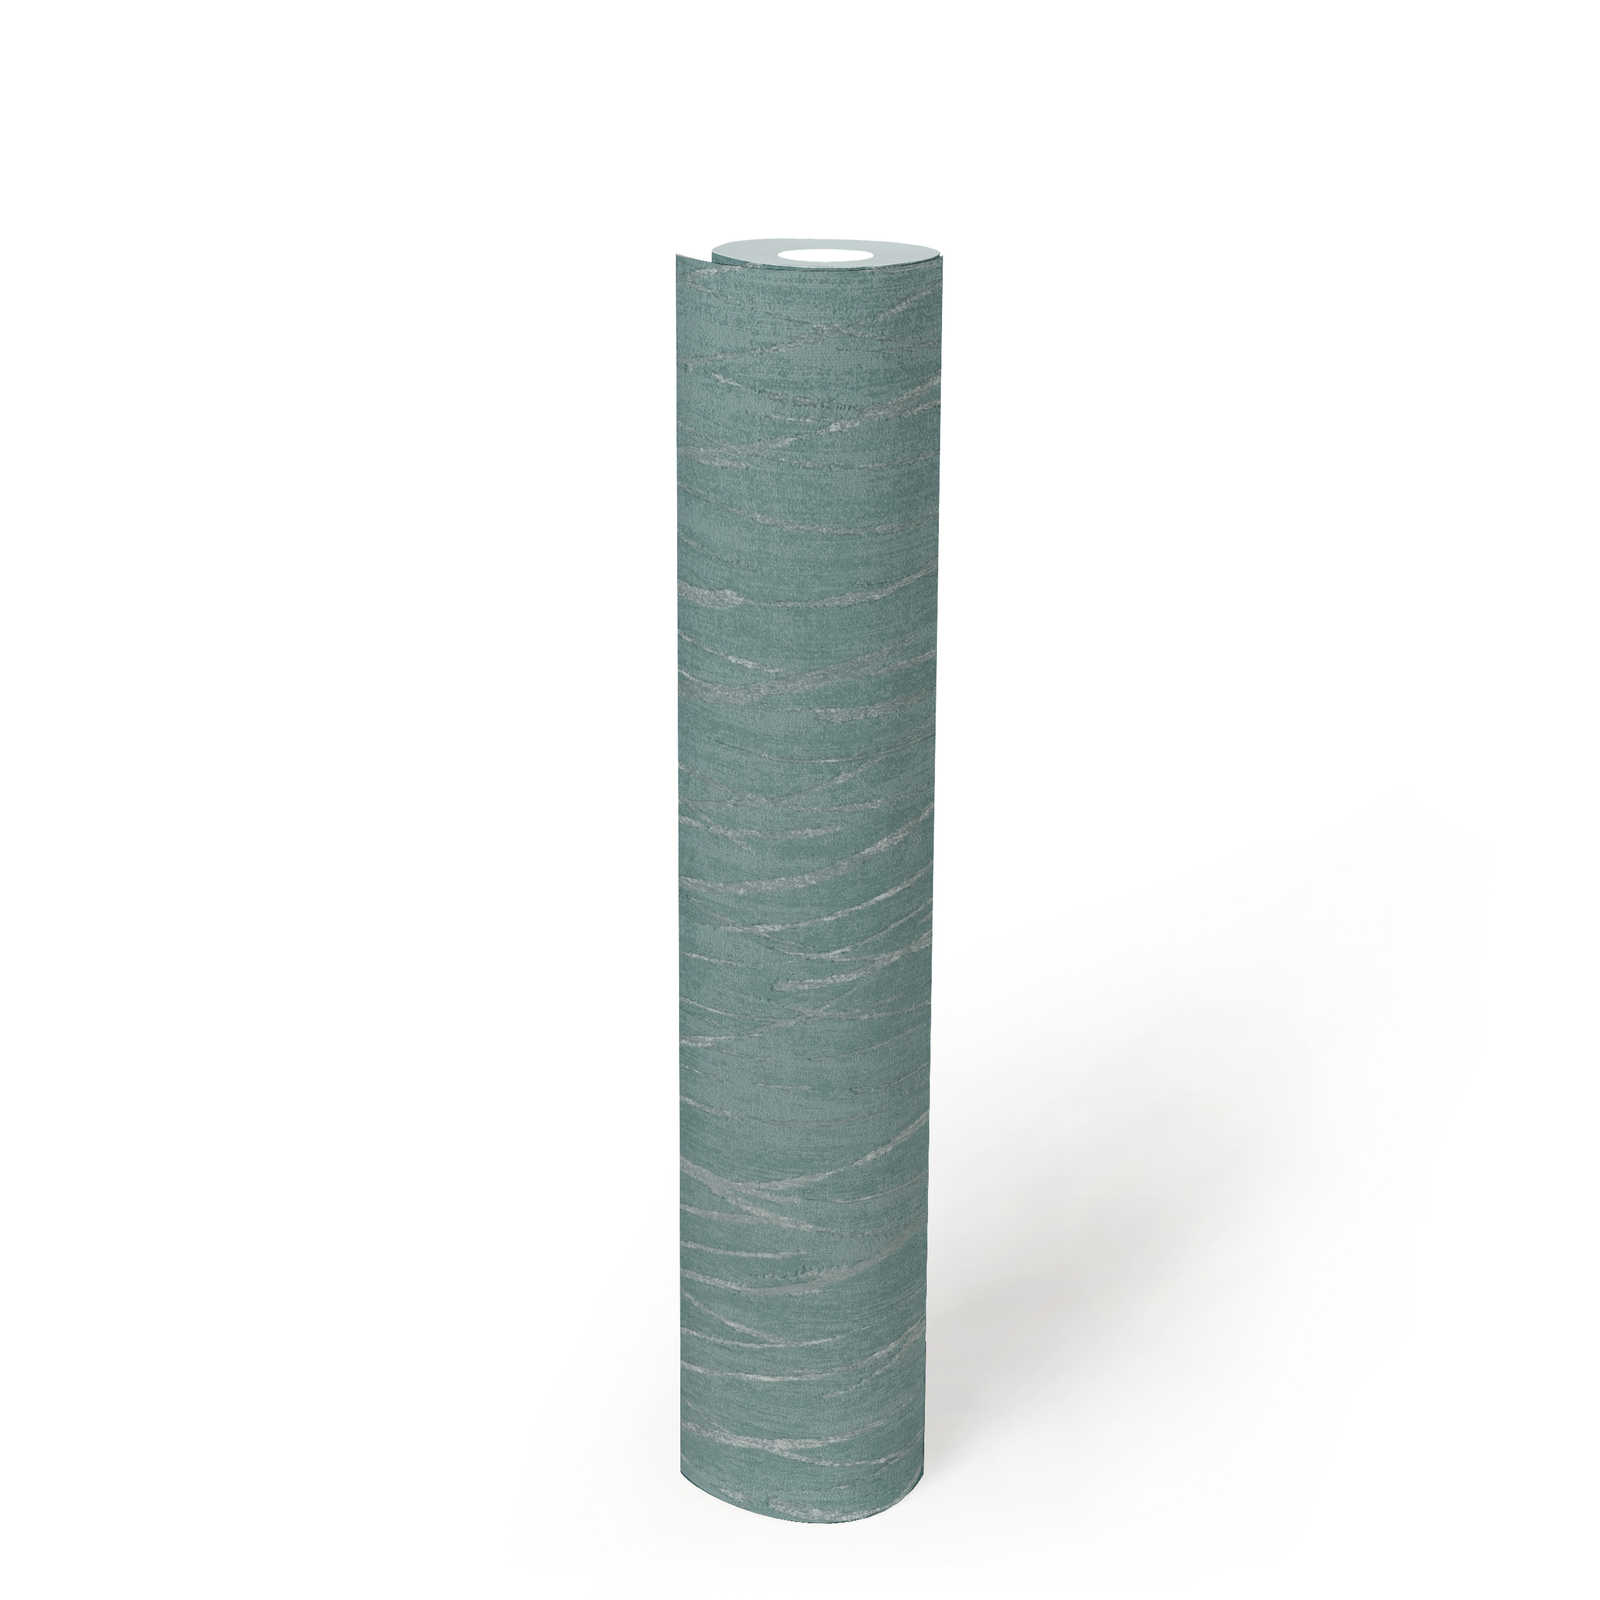             Strukturtapete mit Metallic Farben – Blau, Grün, Silber
        